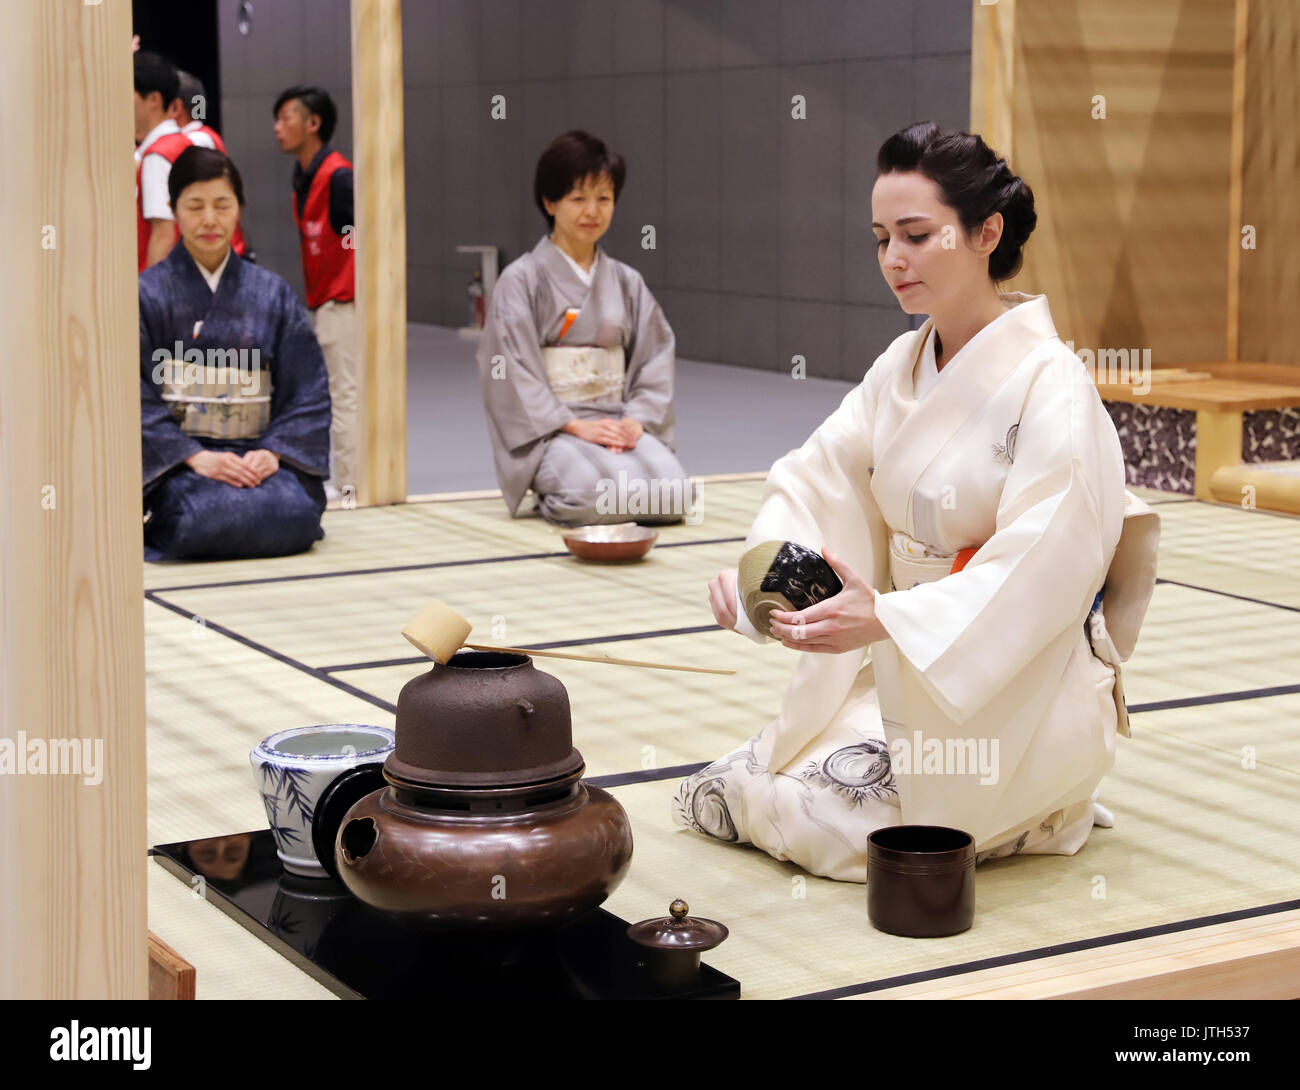 Tokyo, Japon. 9 Août, 2017. L'actrice américaine Roza Akino fonctionne à une cérémonie du thé à l''Monozukuri/Takumi no Waza Expo' (Maîtres de l'artisanat Expo) au Forum International de Tokyo à Tokyo, le mercredi, 89 août 2017. Koike a assisté à la cérémonie d'ouverture d'un événement de trois jours pour montrer les compétences d'artisans japonais et l'artisanat traditionnel. Credit : Yoshio Tsunoda/AFLO/Alamy Live News Banque D'Images